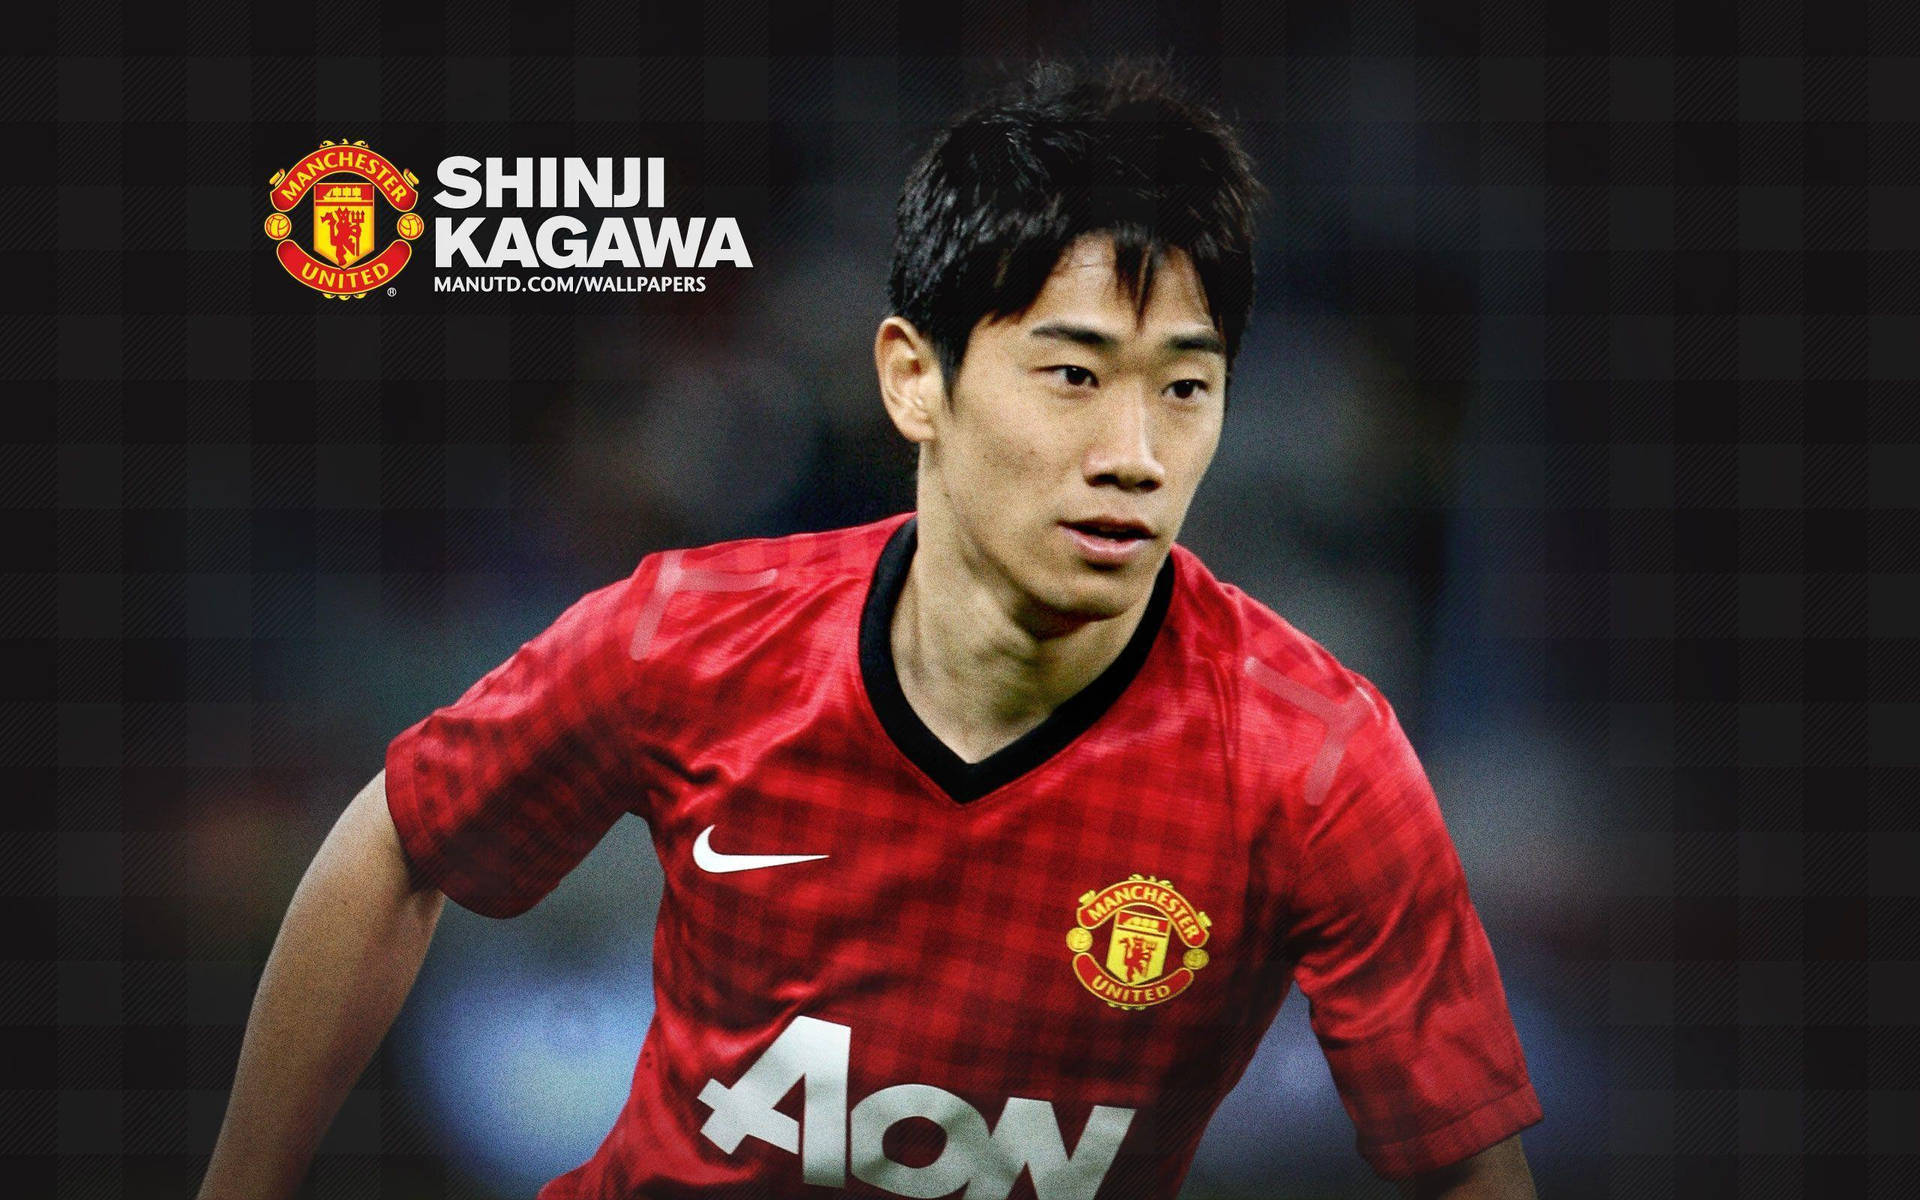 Manchester United Players Spotlight: Shinji Kagawa